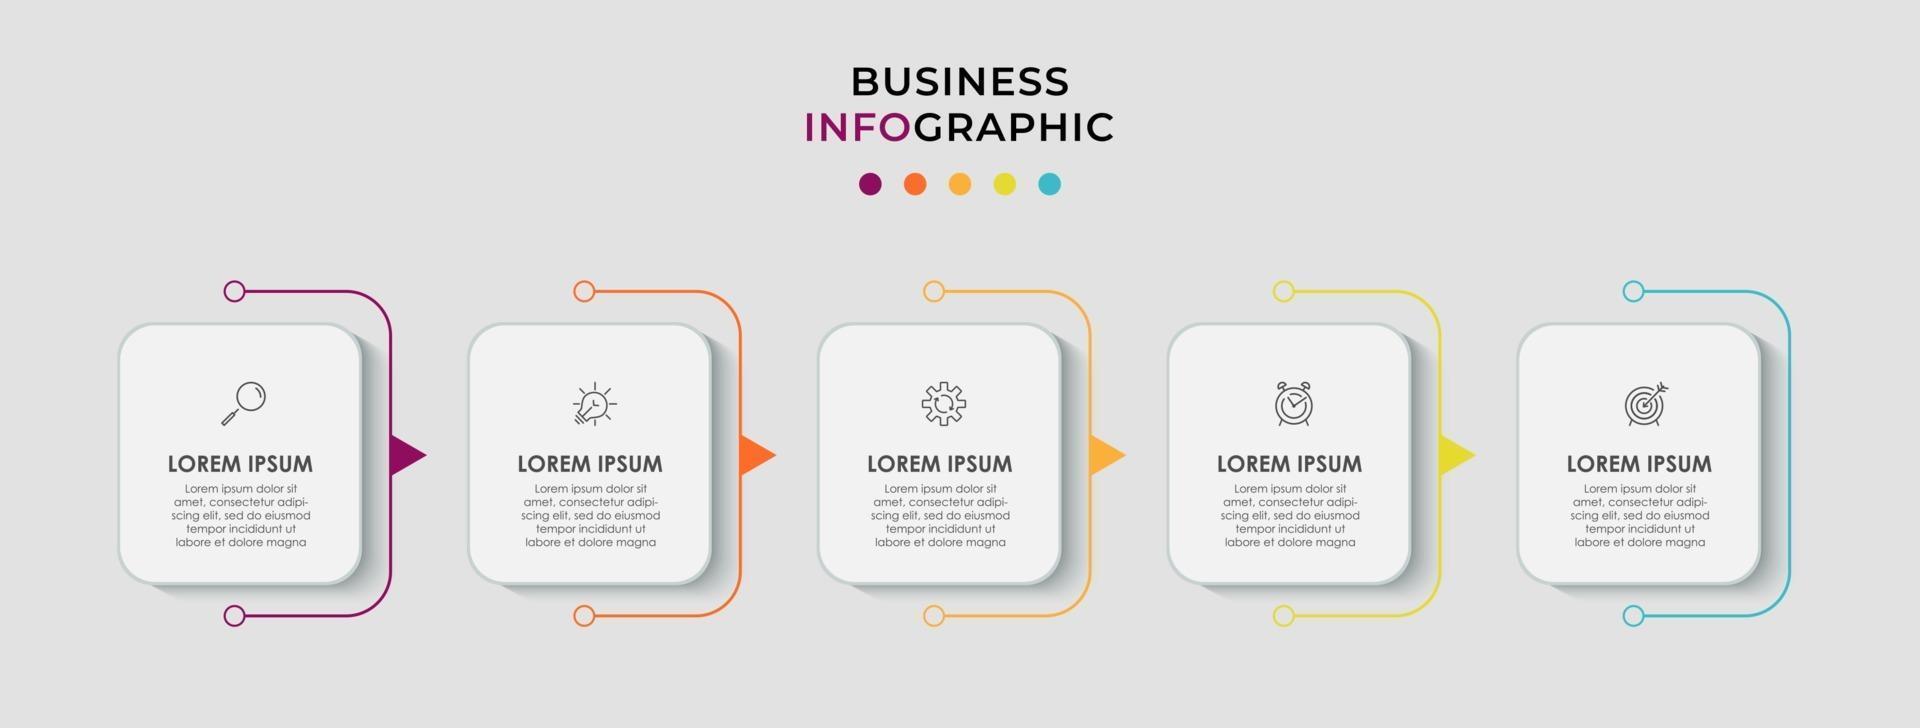 infographics design vektor och marknadsföringsikoner kan användas för arbetsflödeslayout, diagram, årsredovisning, webbdesign. affärsidé med 5 alternativ, steg eller processer.